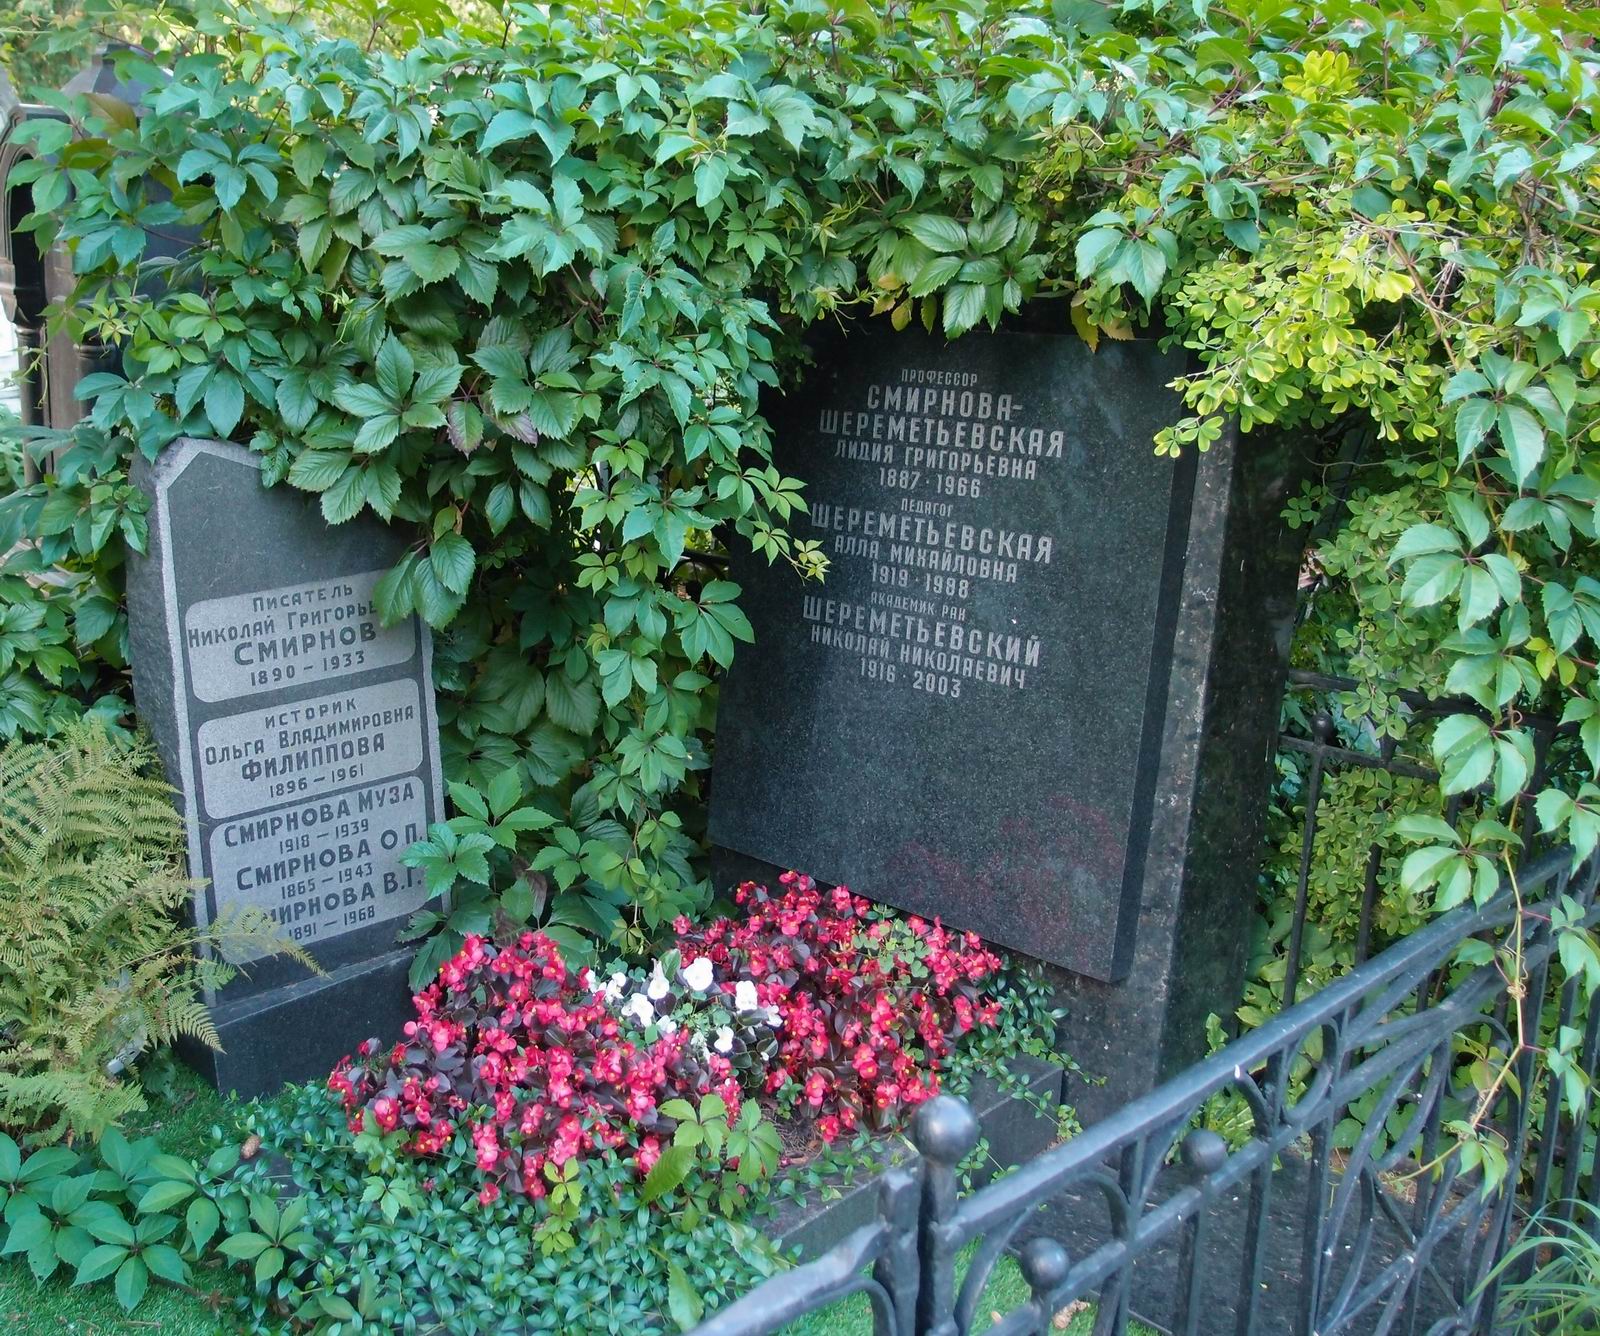 Памятник на могиле Шереметьевского Н.Н. (1916-2003), на Новодевичьем кладбище (4-3-15).